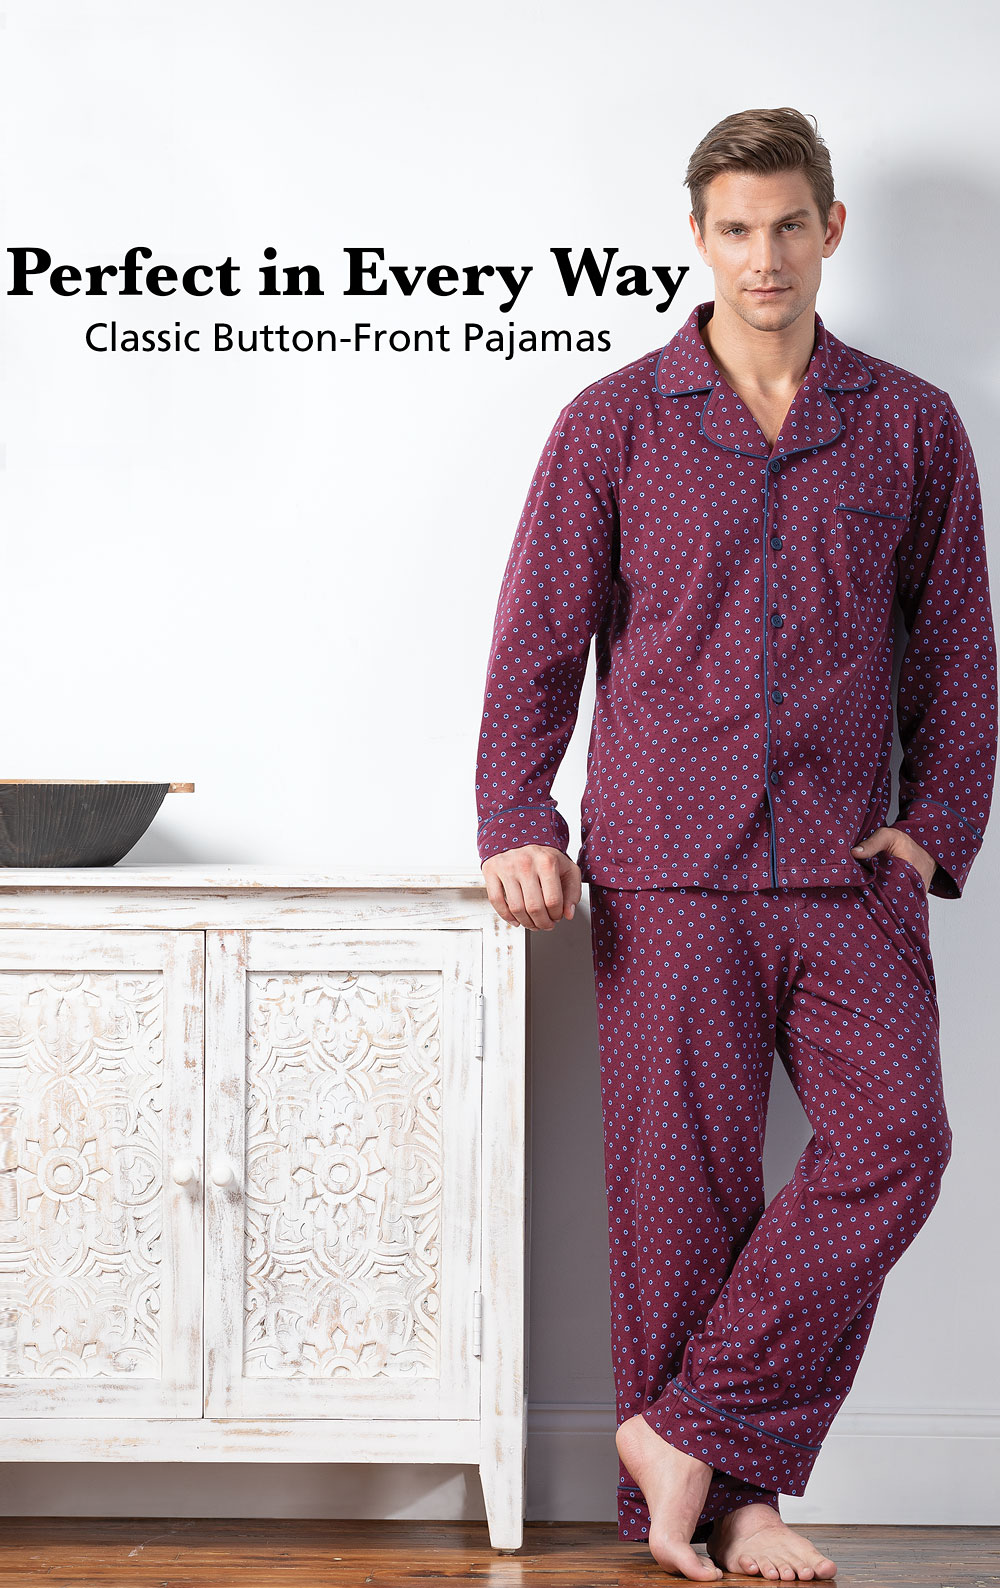 Classic Foulard Men's Pajamas - Burgundy in Cotton Pajamas for Men ...